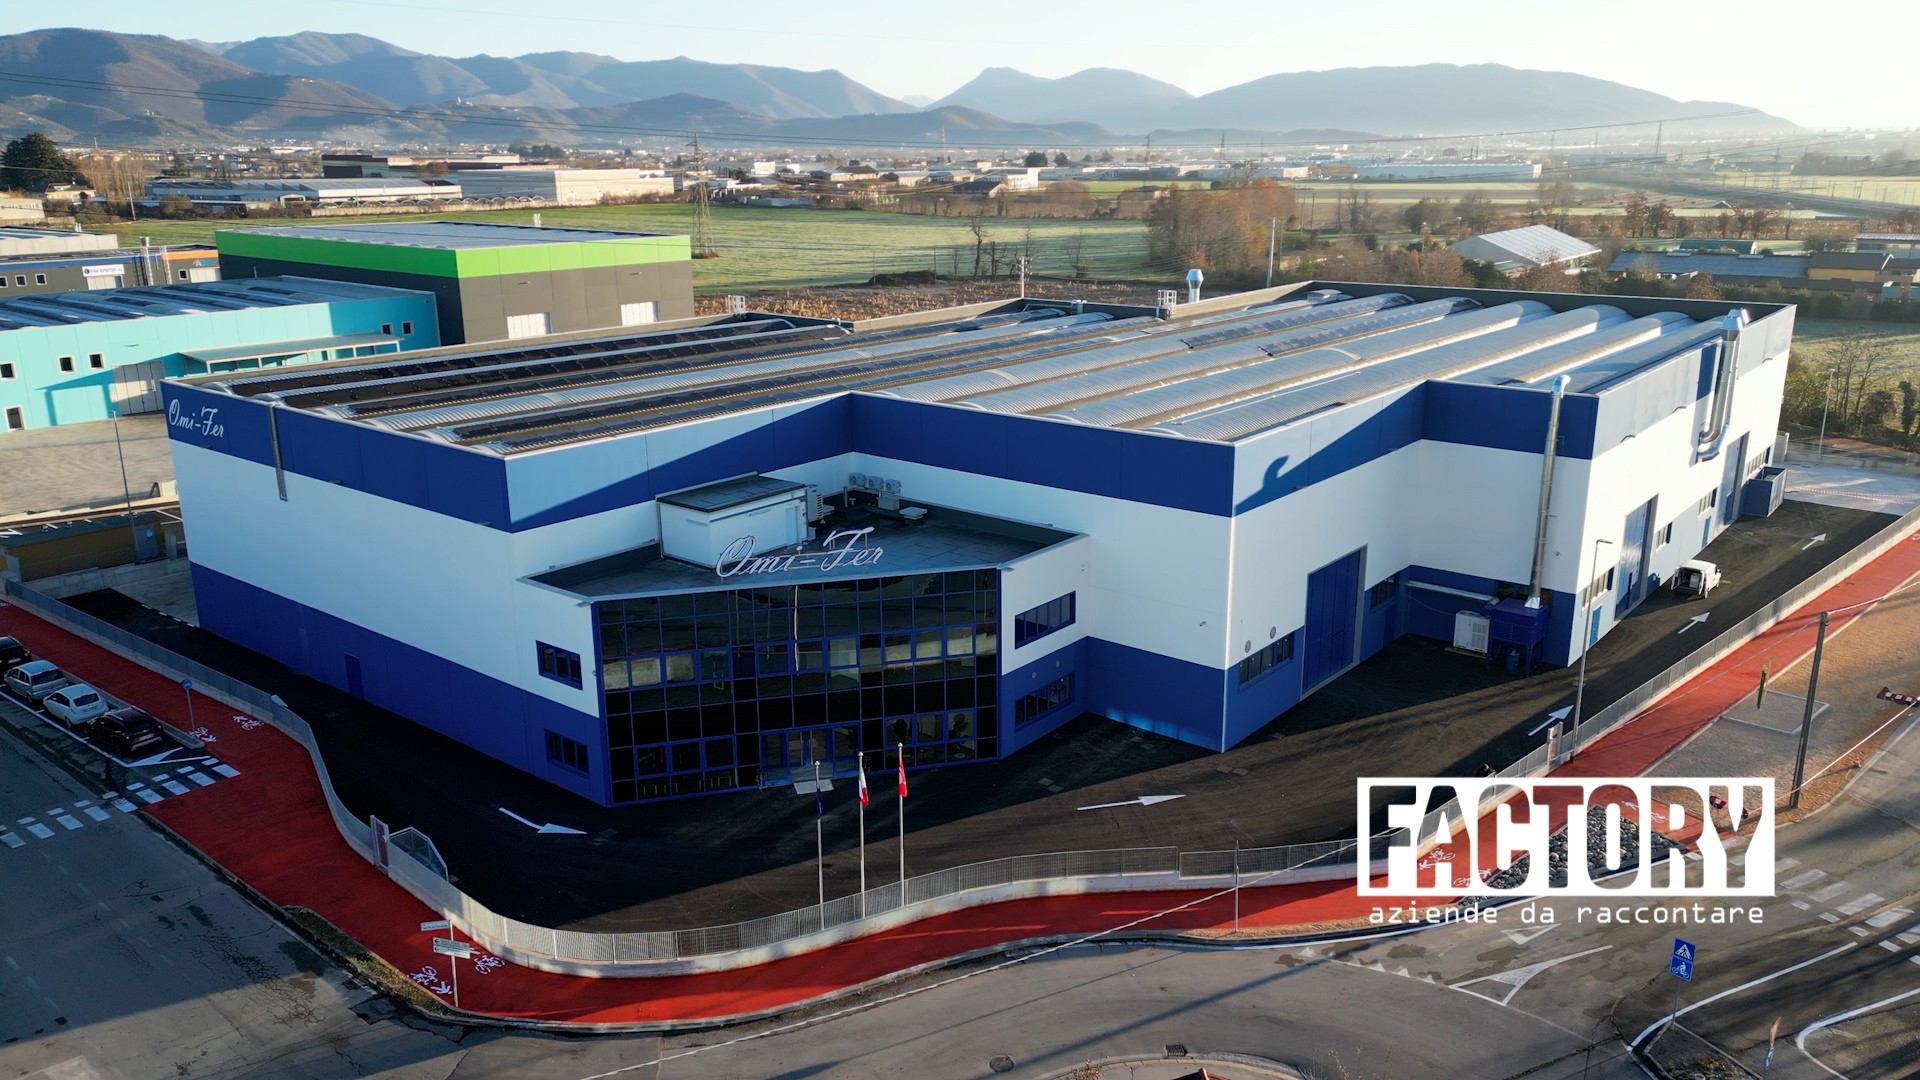 Factory | Omi-Fer, un cuore tunisino per una grande azienda italiana